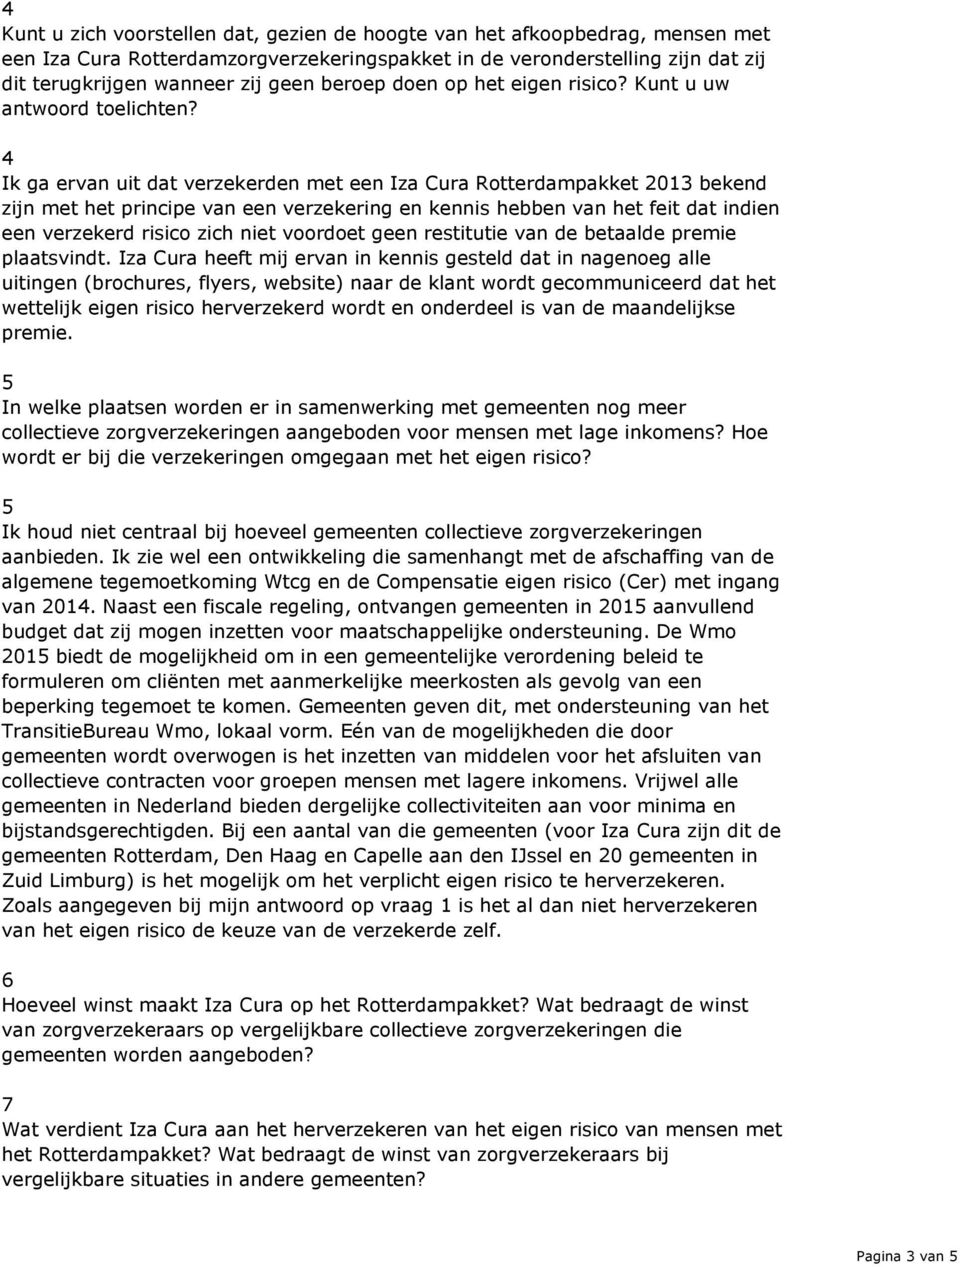 4 Ik ga ervan uit dat verzekerden met een Iza Cura Rotterdampakket 203 bekend zijn met het principe van een verzekering en kennis hebben van het feit dat indien een verzekerd risico zich niet